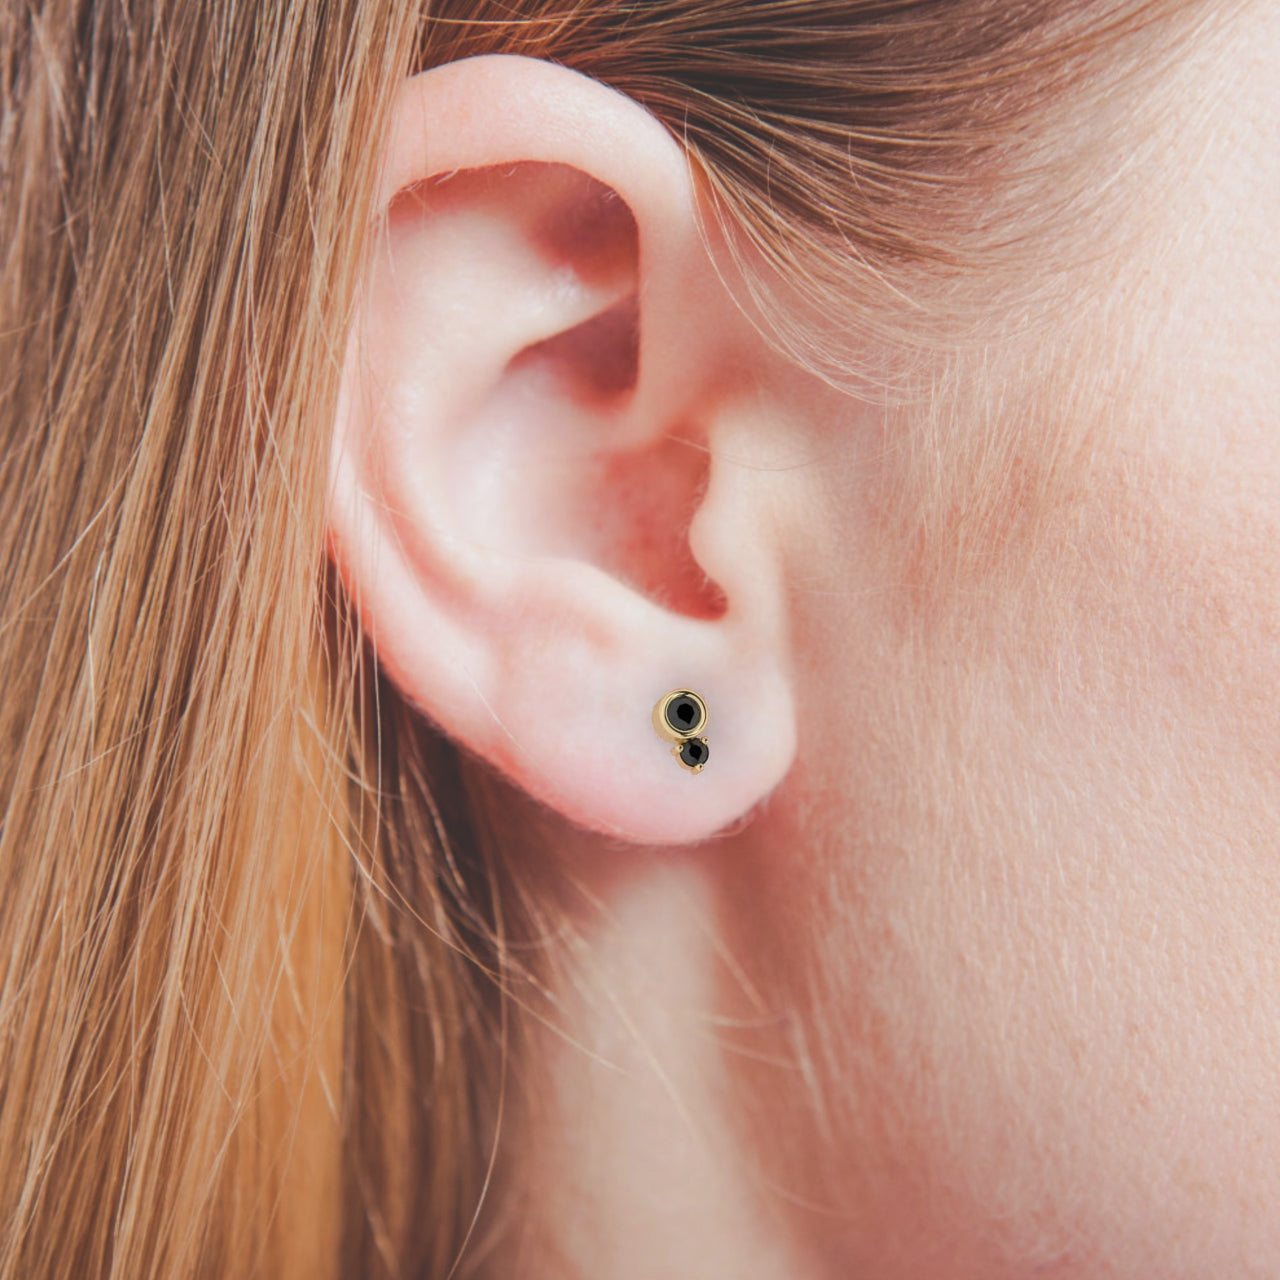 Black Cube Stud Earrings | Cube studs, Ear piercing studs, Best earrings  for men